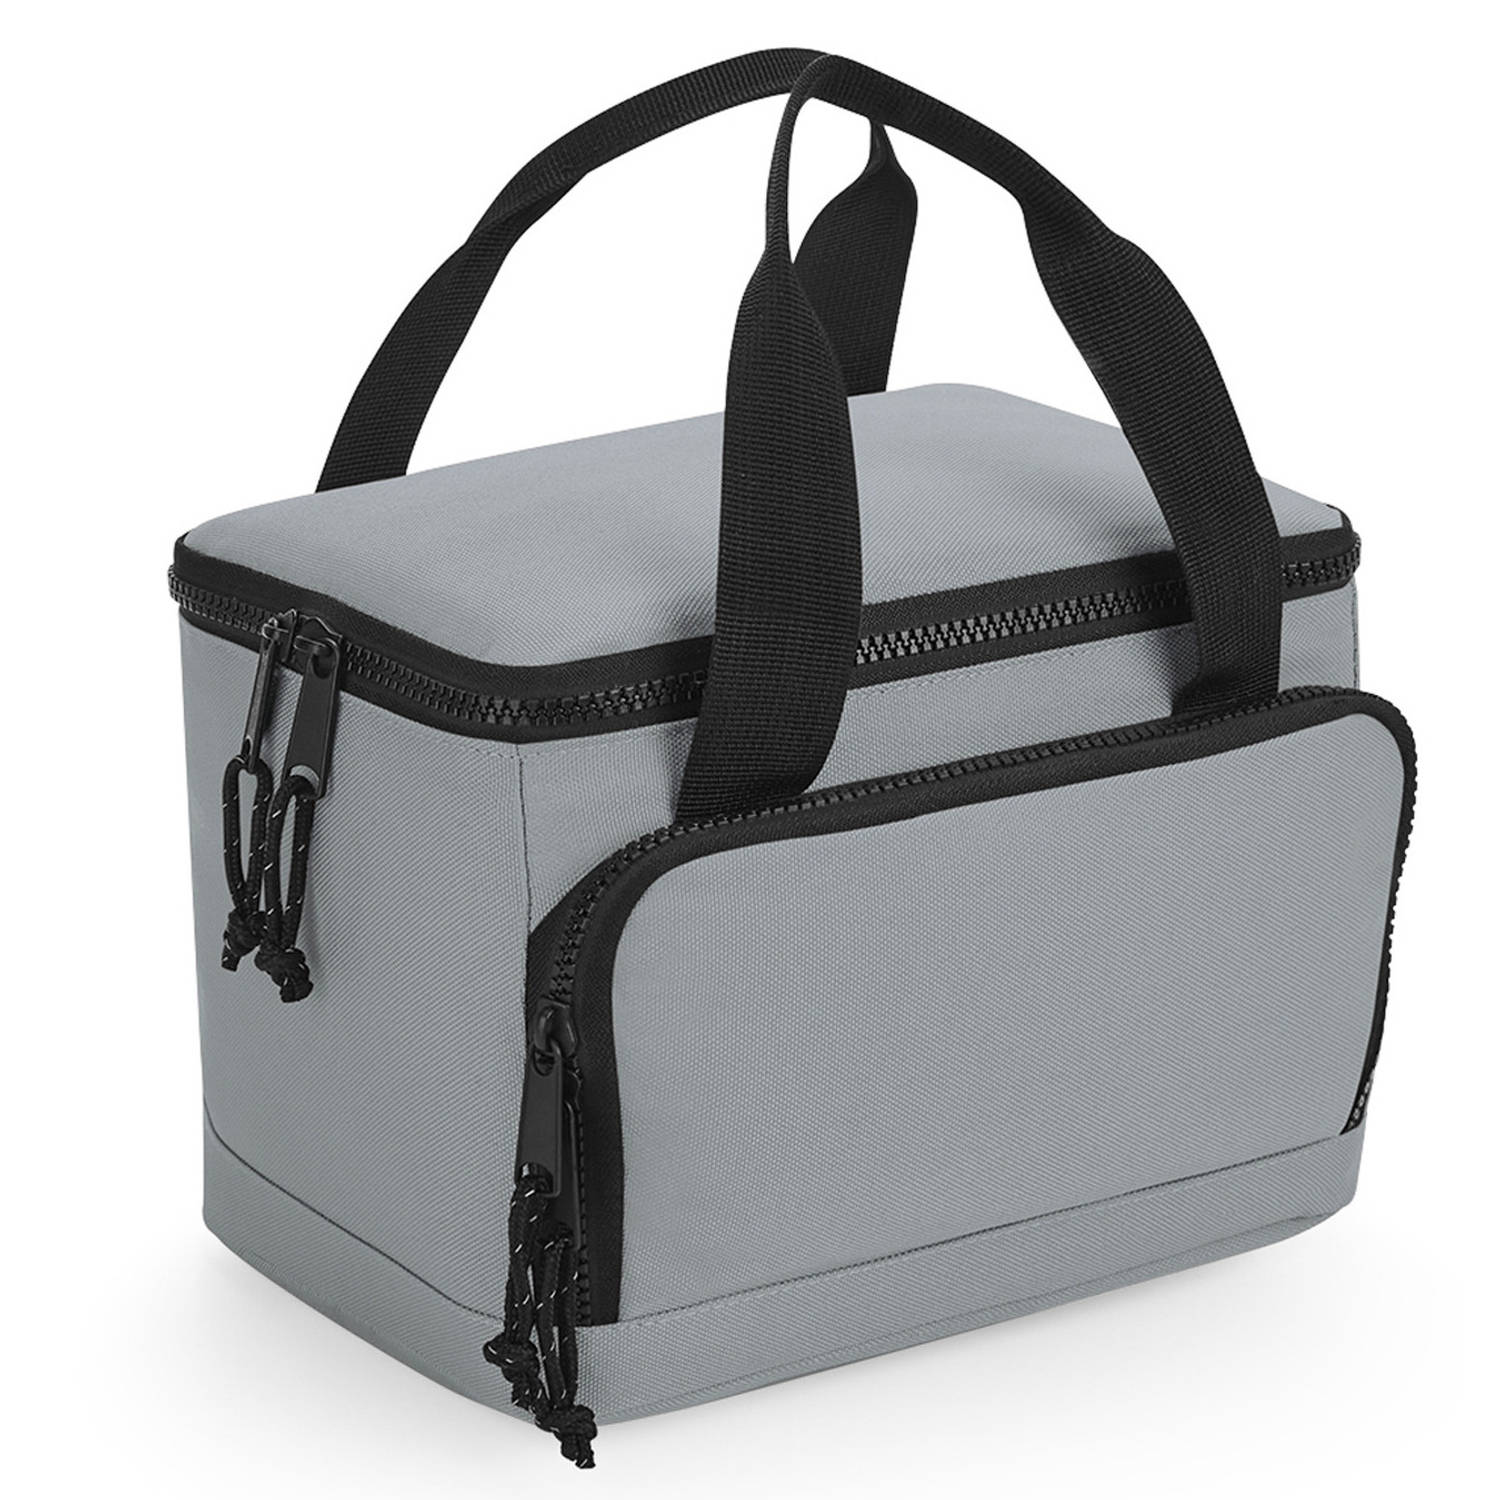 Bagbase koeltasje/lunch tas model Compact - 24 x 17 x 17 cm - 2 vakken - grijs/zwart - klein model - Koeltas